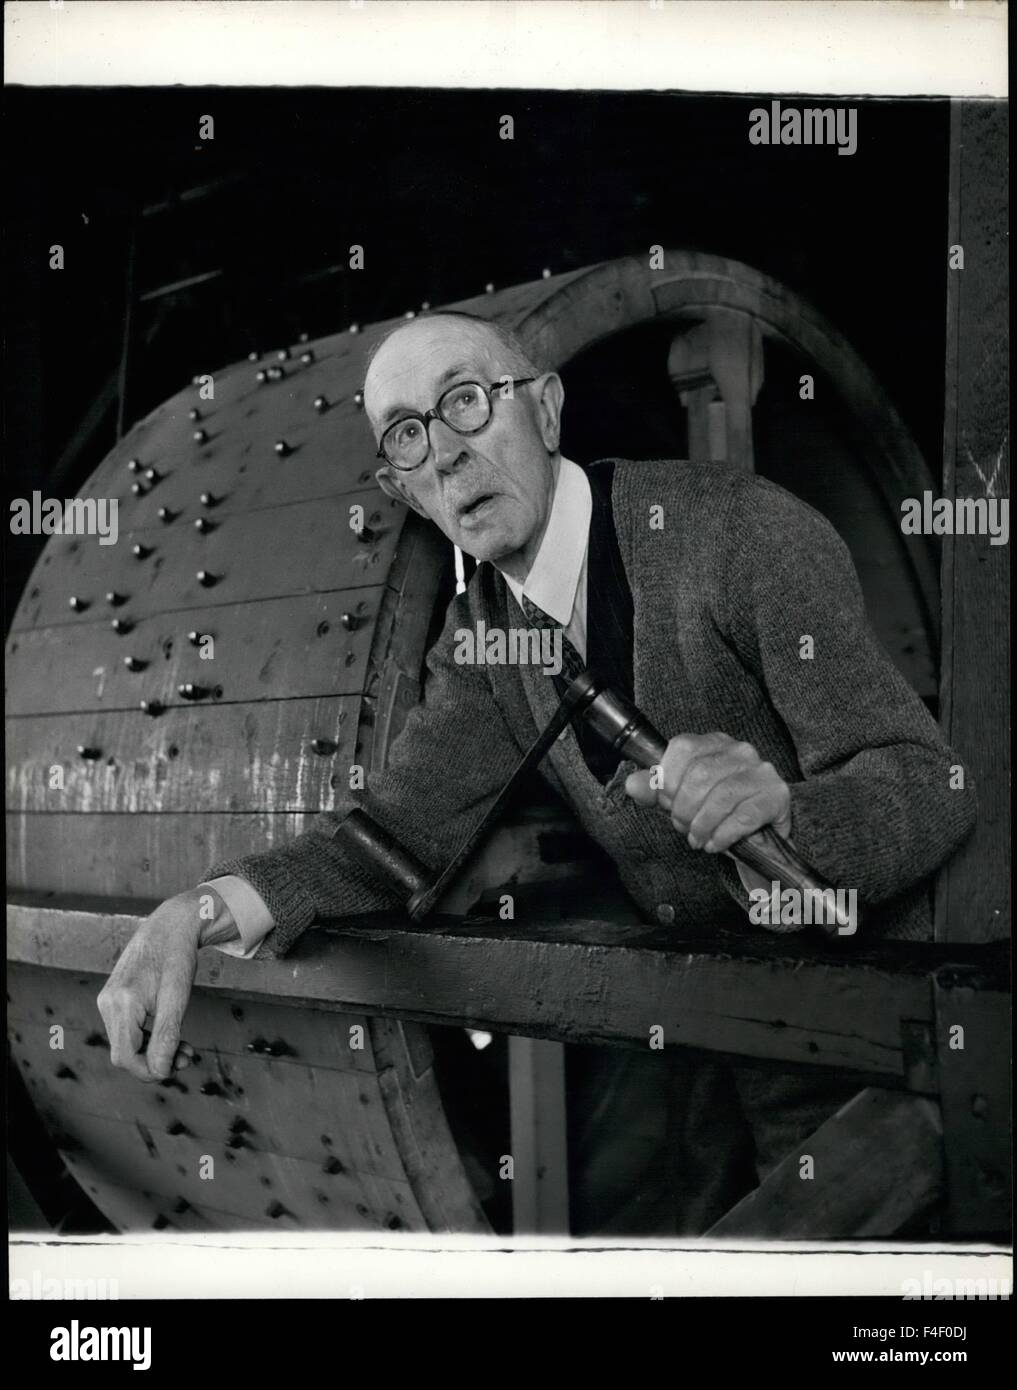 1964 - Minster alzavetro del clock è di ottanta anni di età: ogni giorno Harry Clulow rende il suo modo fino la stretta scalinata a spirale per la camera di orologio di Southwell Minster. Lì, con una manovella a mano egli avvolge il pesante meccanismo dell'orologio. Dopo che egli è stato fatto, egli si appoggia sulla rampa prima che il tamburo di avvolgimento, tenendo la manovella in mano e i sogni dei giorni della sua giovinezza, quando ha fatto il viaggio su per le scale fino a un minuto di morti. © Keystone Pictures USA/ZUMAPRESS.com/Alamy Live News Foto Stock